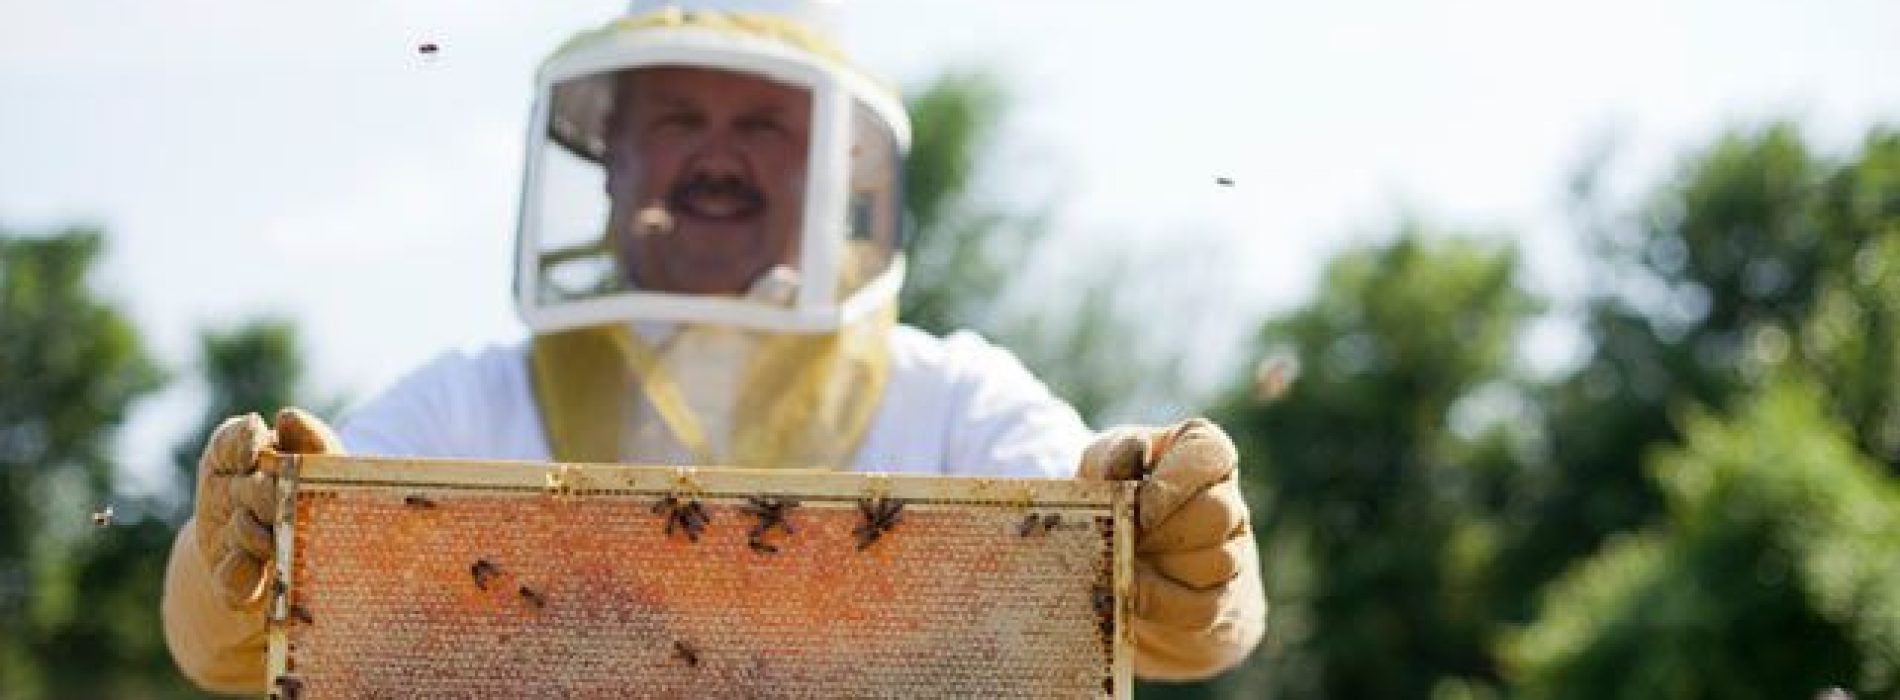 Hoe deze inheemse imker tegen Monsanto vocht om inheemse bijen te redden en won